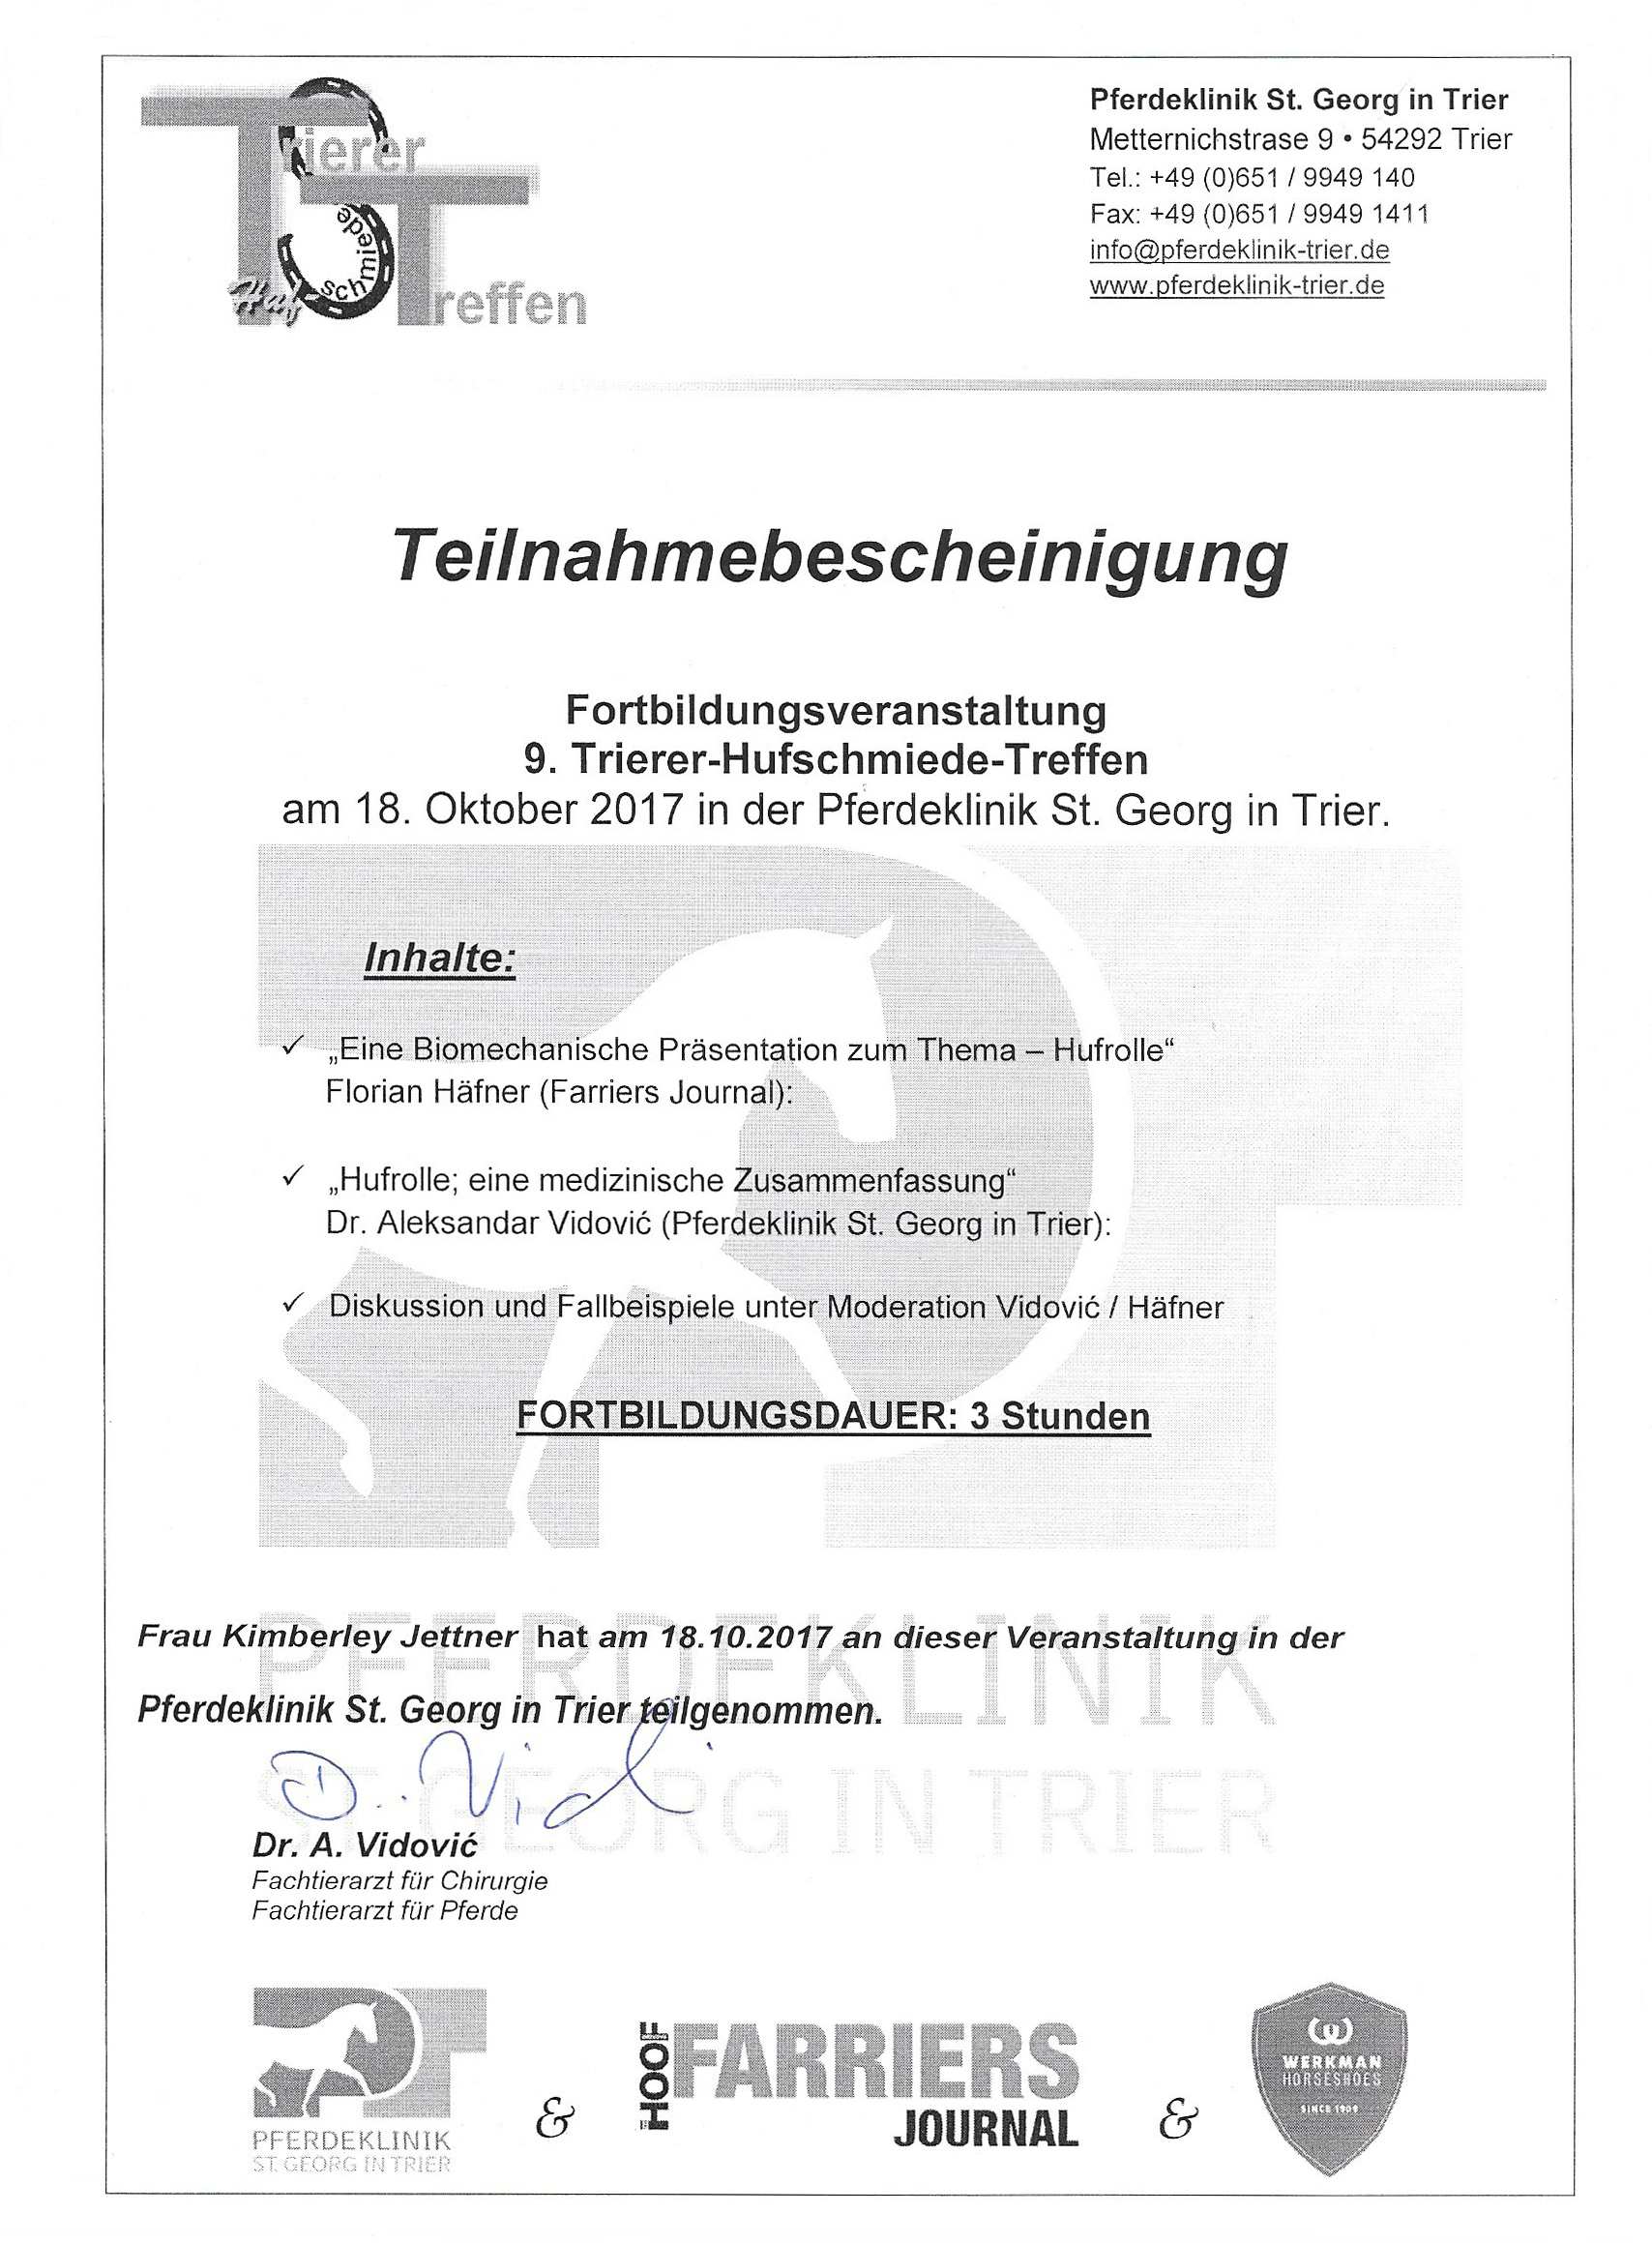 Teilnahmebescheinigung 9-Trierer-Hufschmiedetreffen